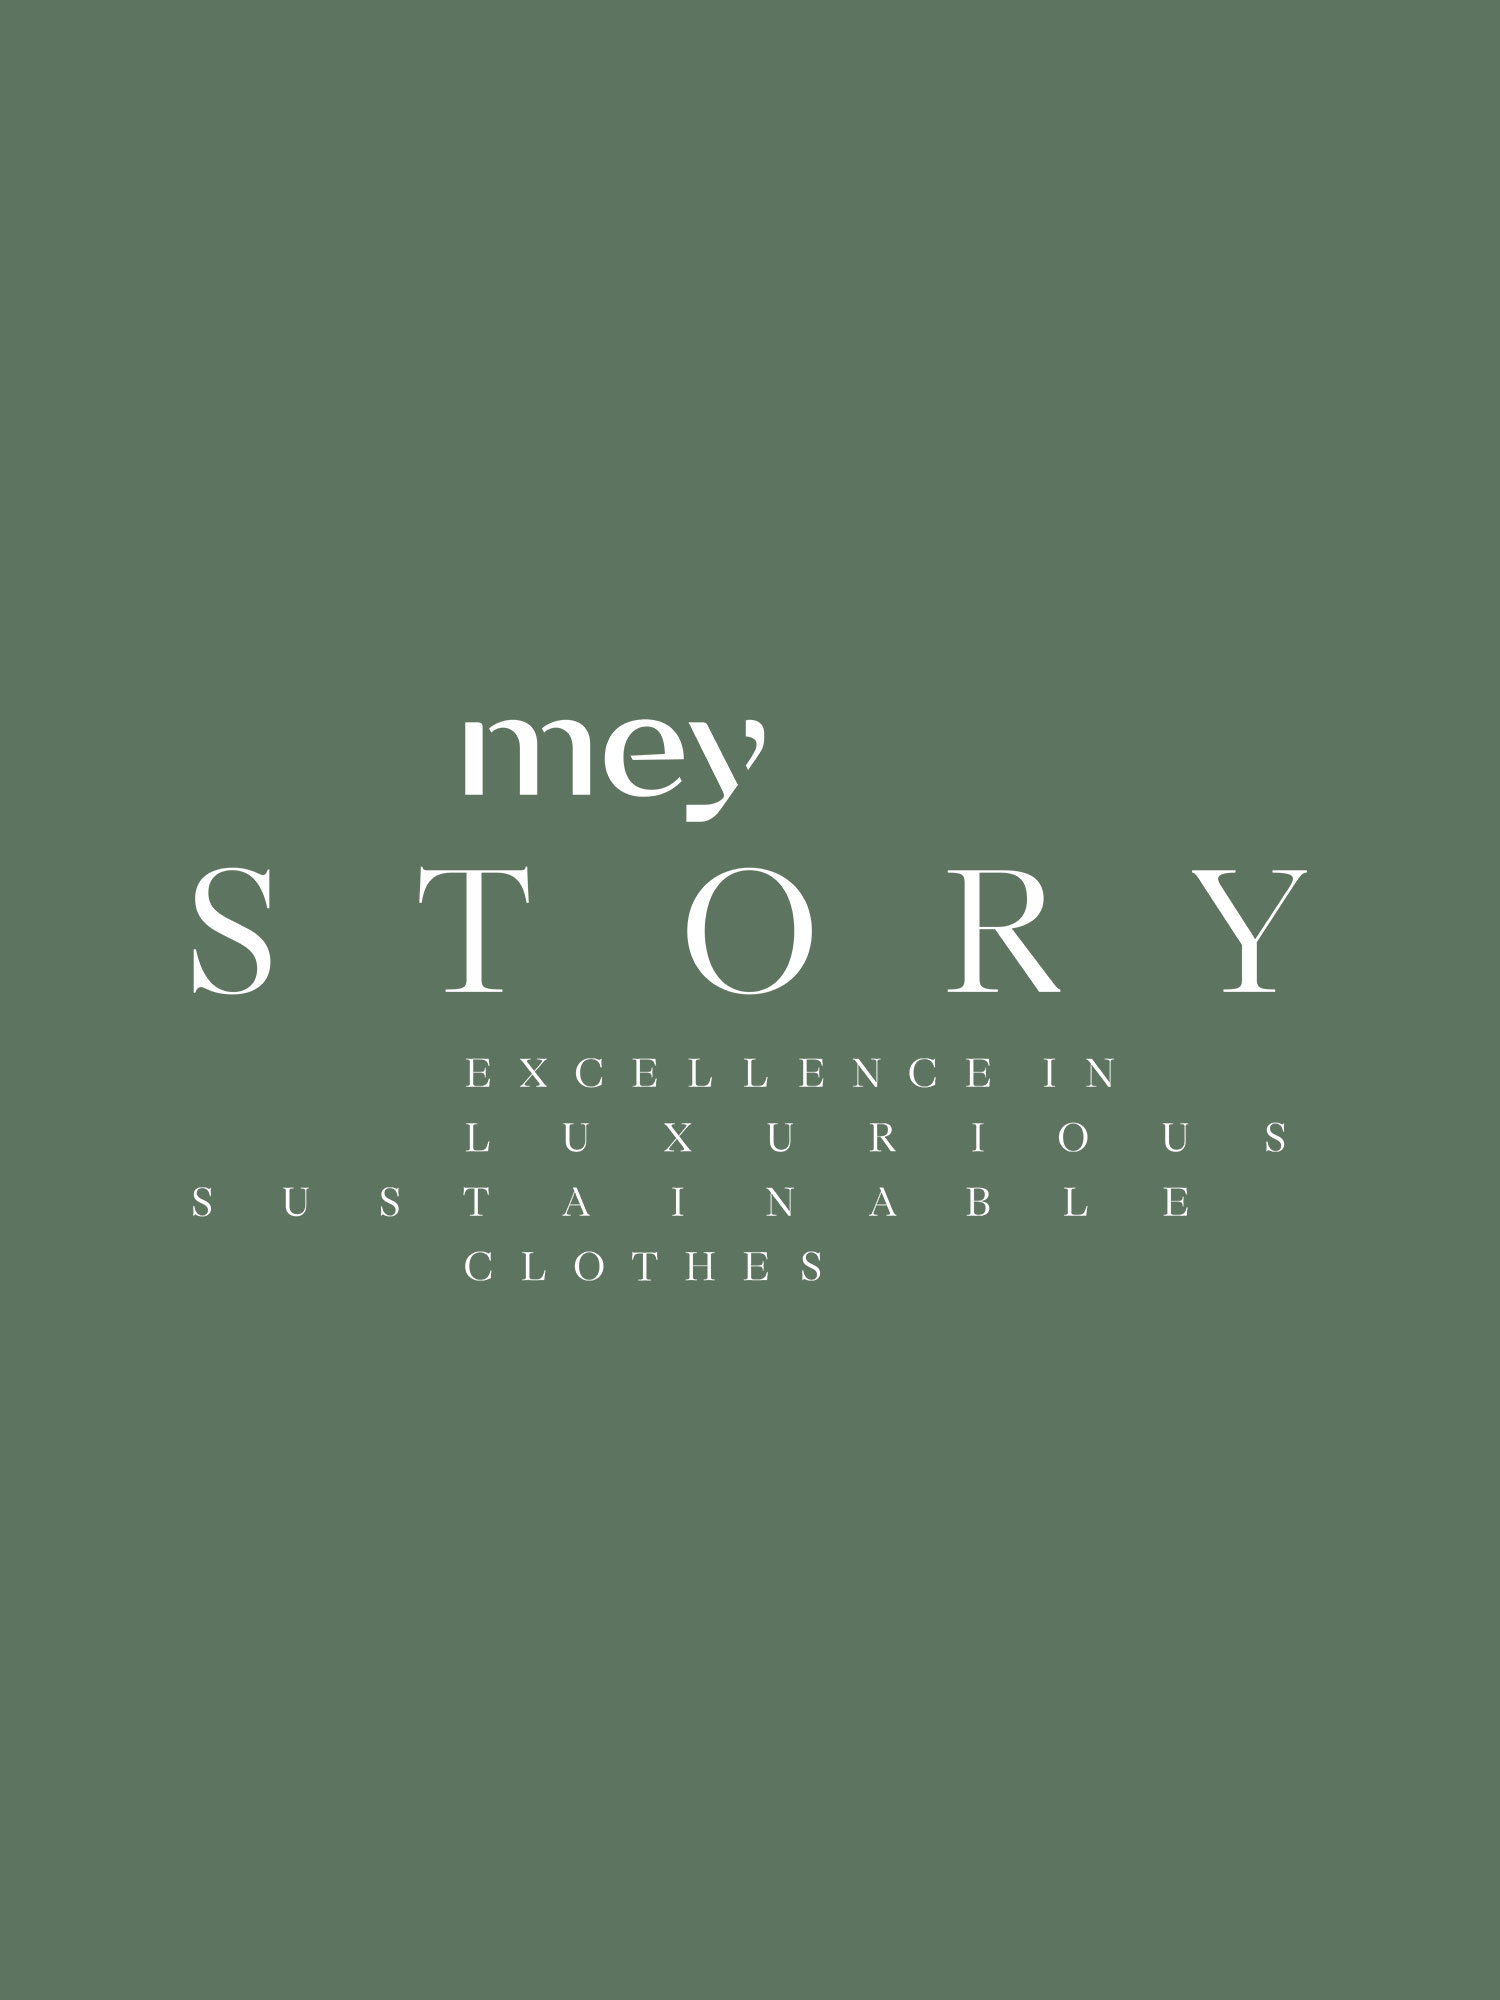 mey story - brand of mey®